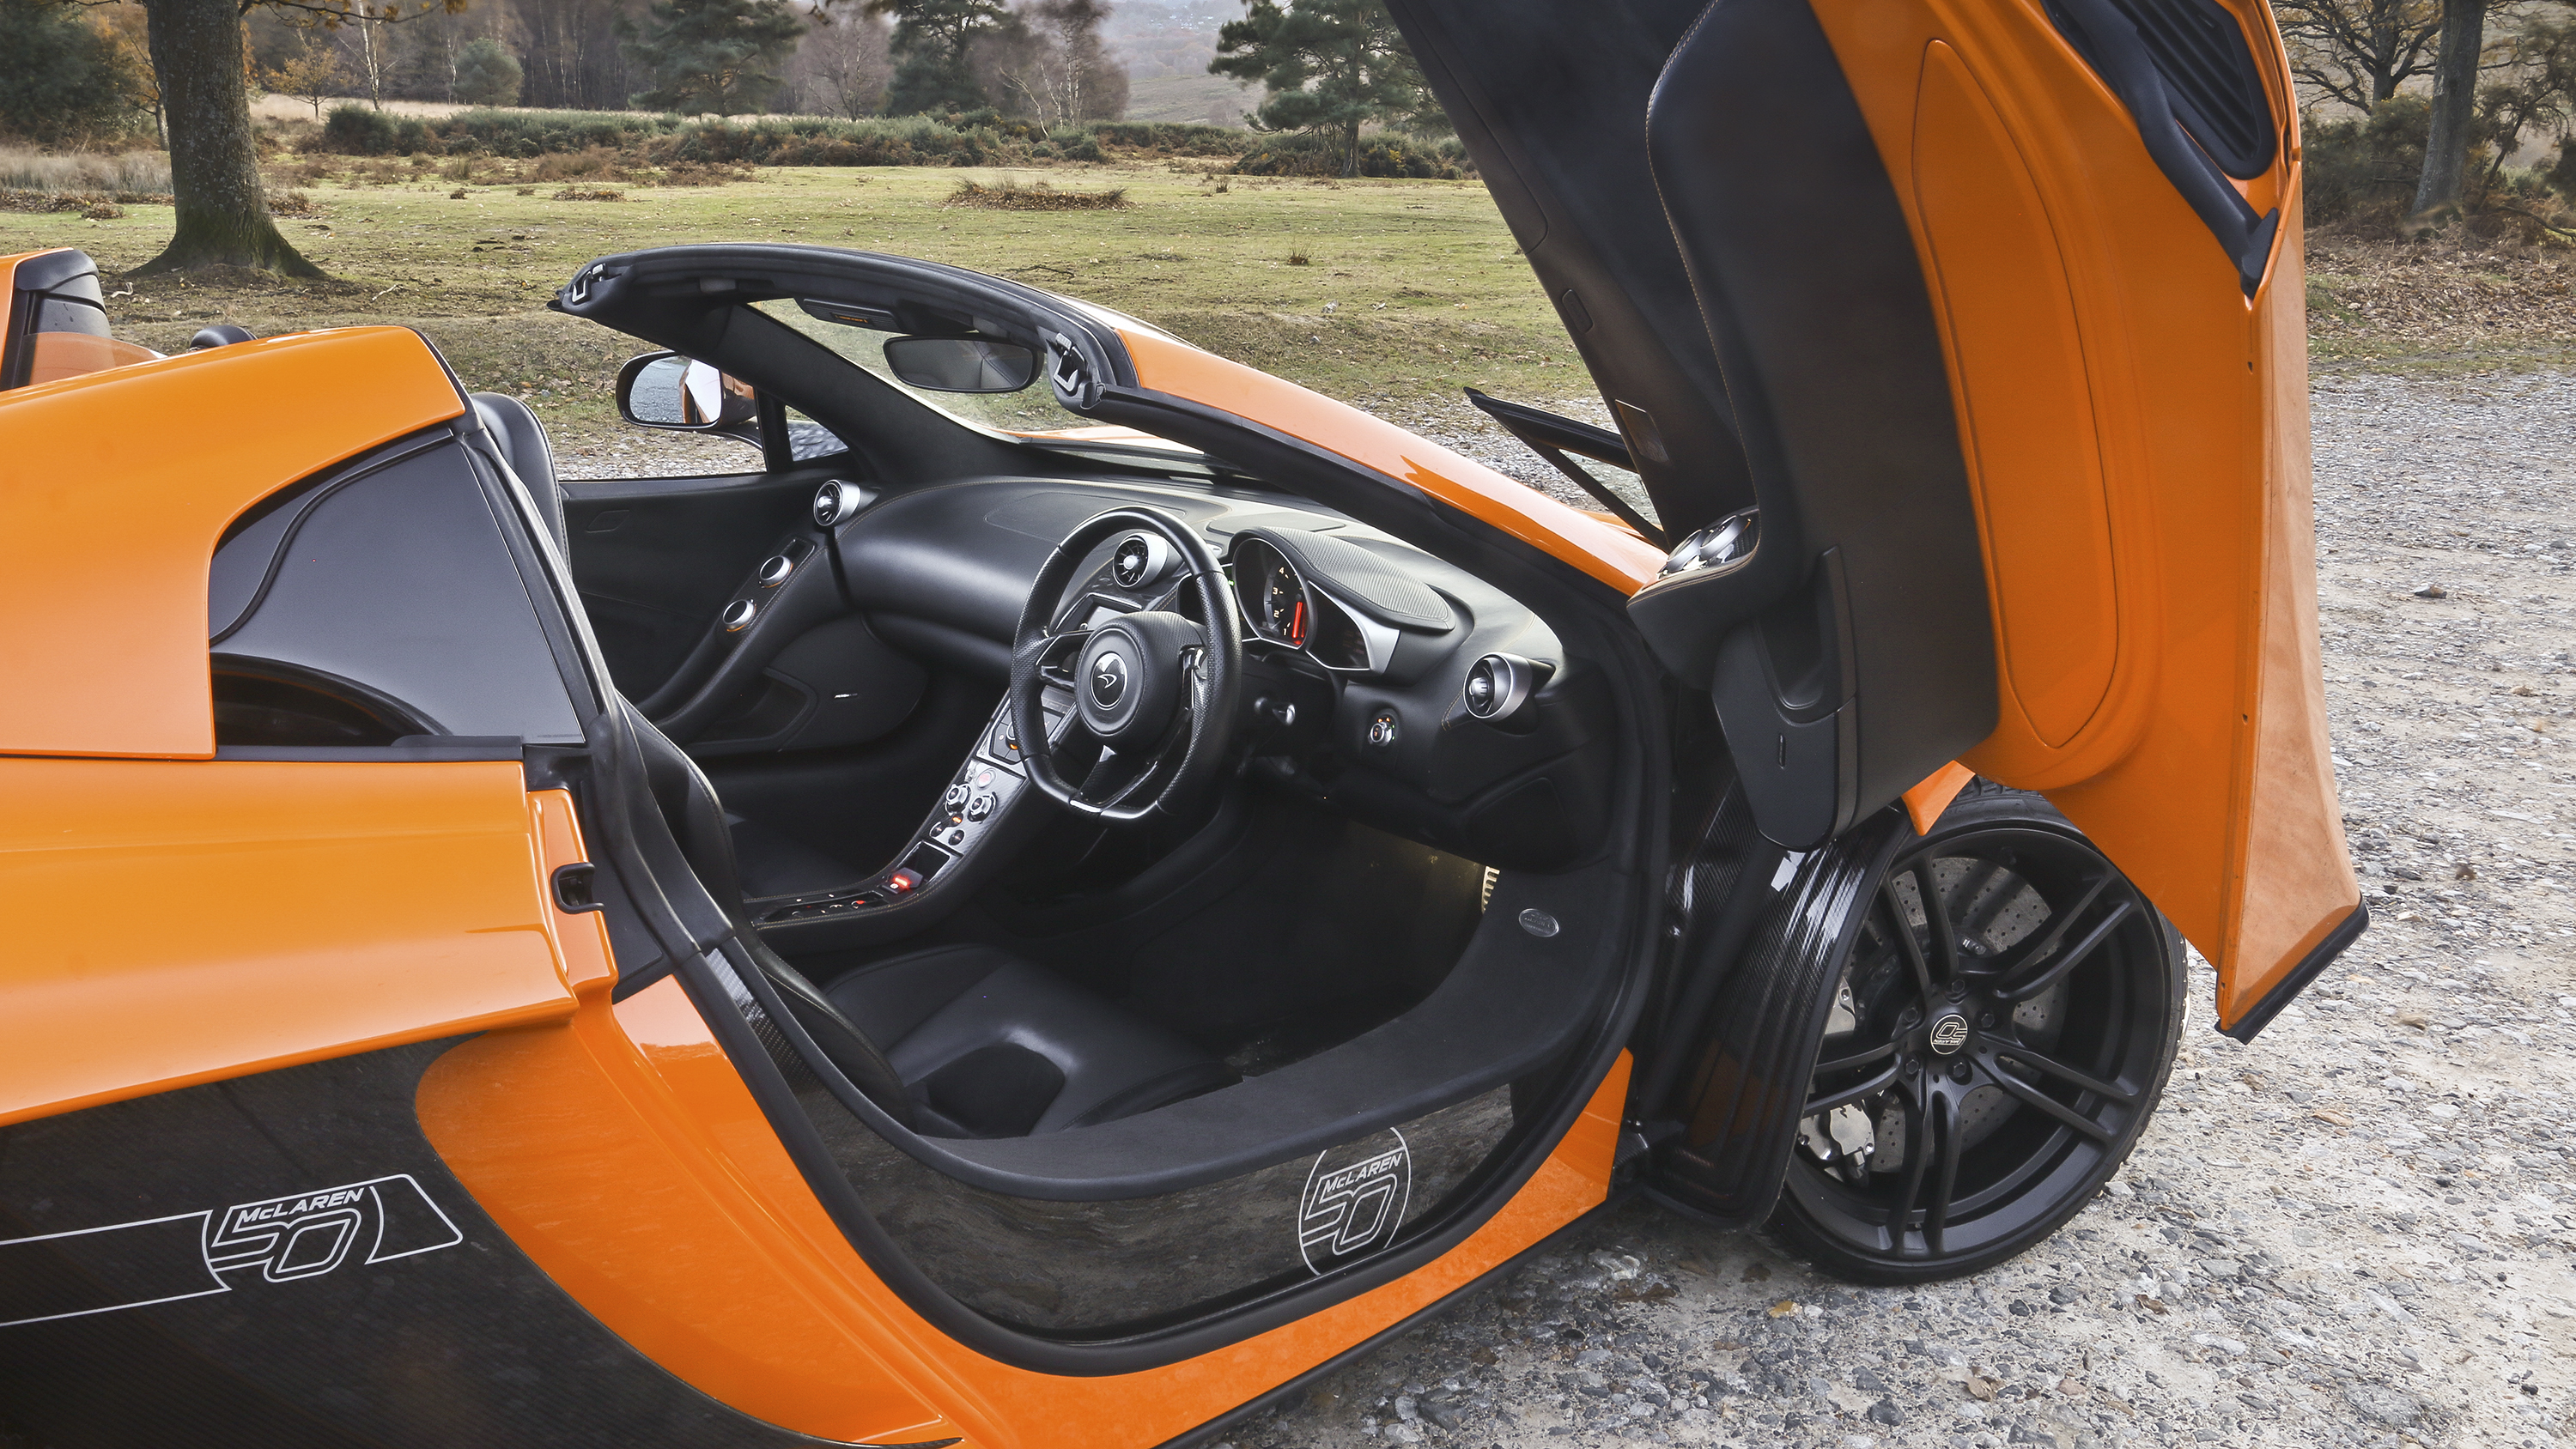 Buy McLaren 12C Price, PPC or HP | Top Gear